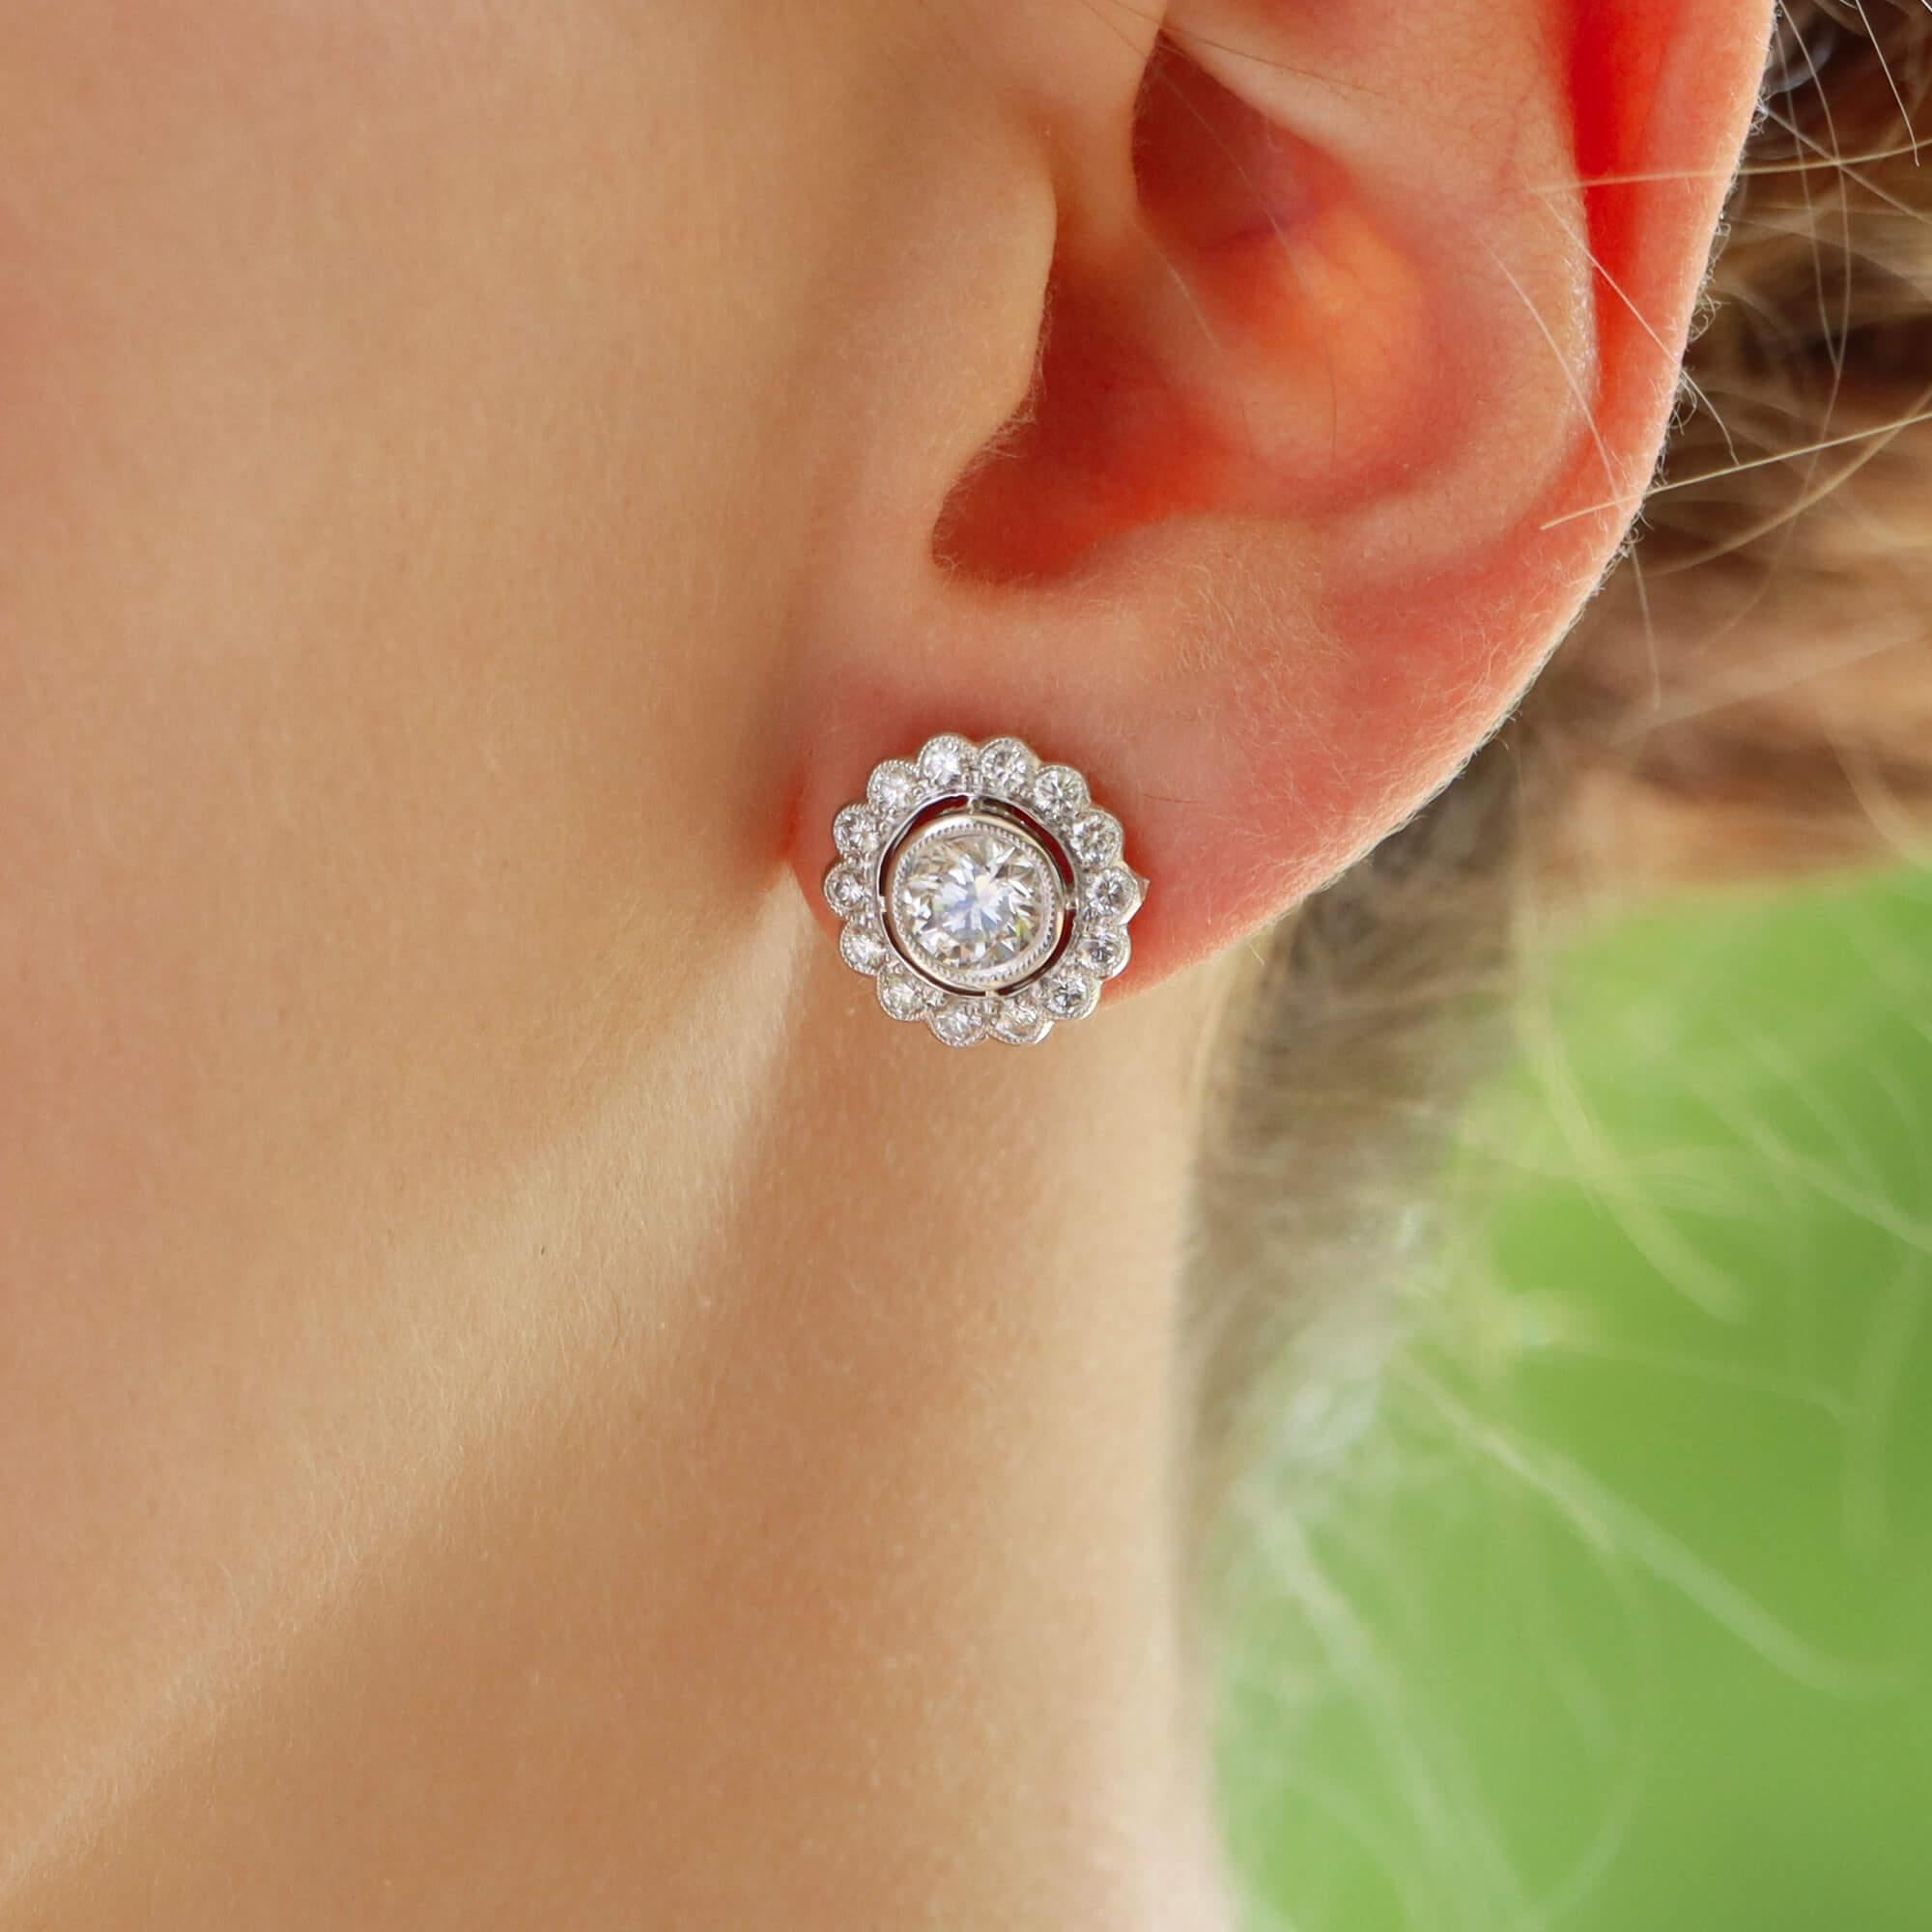 floral cluster earrings